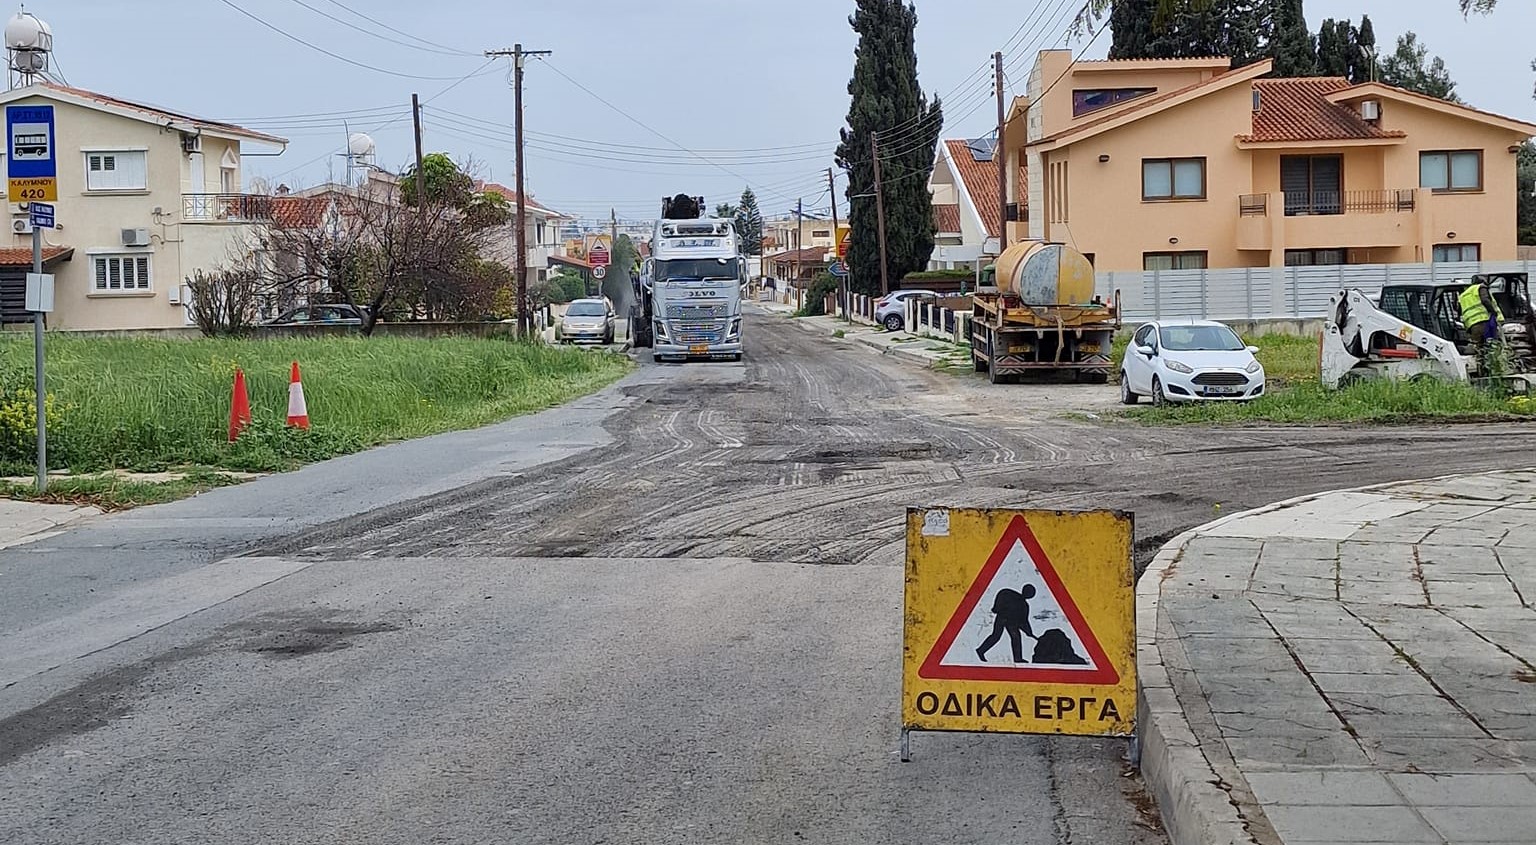 Ο Δήμος Αραδίππου άρχισε εργασίες συντήρησης του οδικού δικτύου σε συγκεκριμένες περιοχές στην περιοχή Κρασά